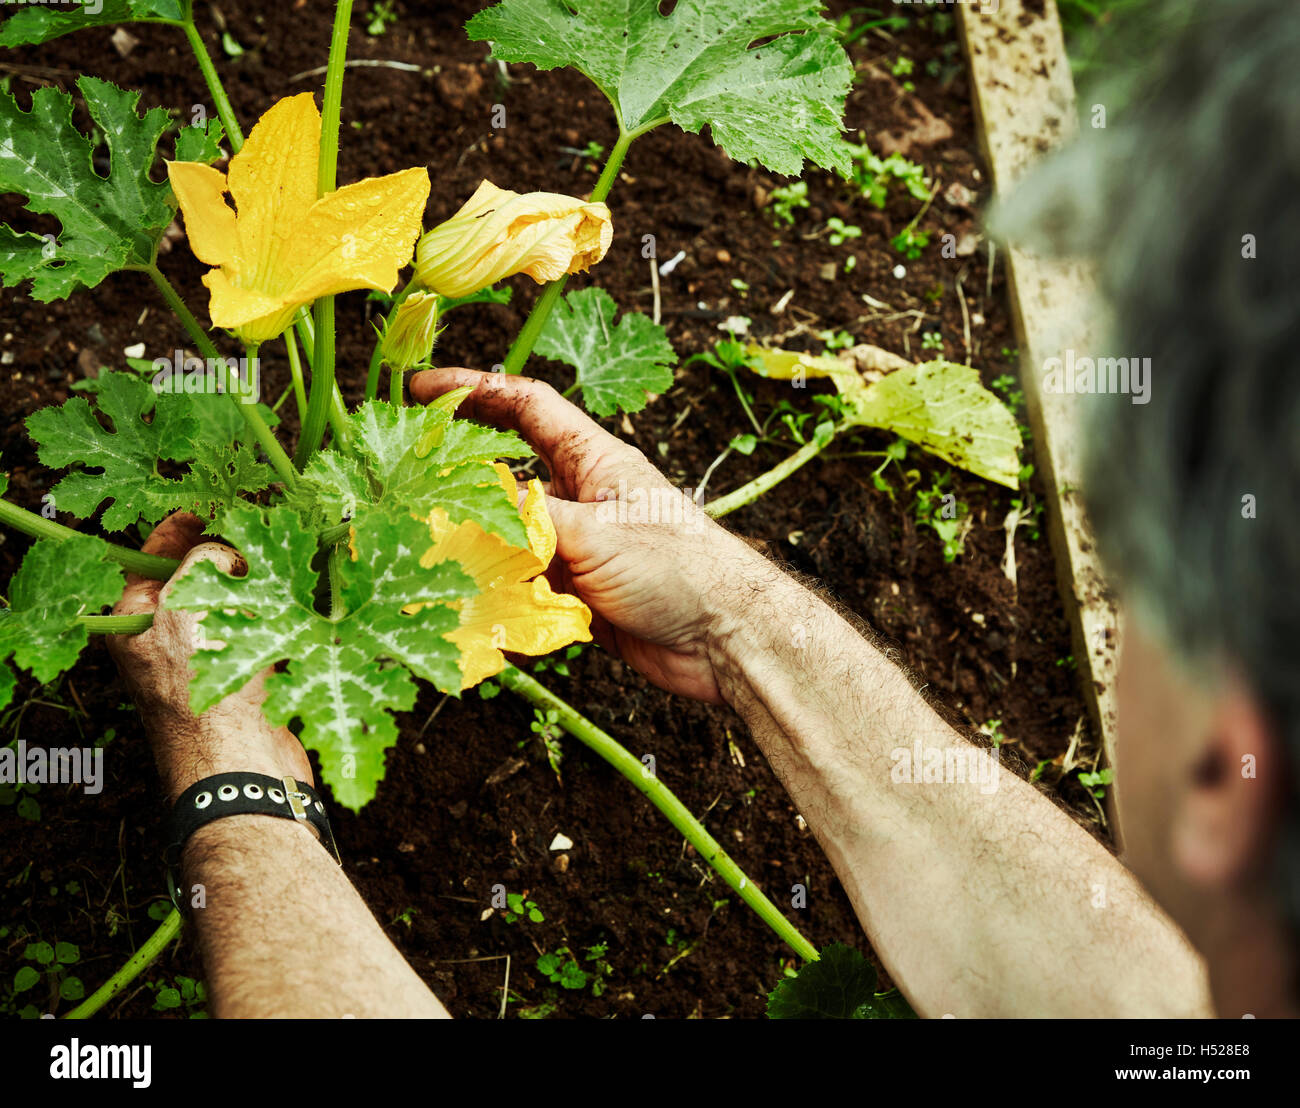 Ein Gärtner arbeiten im Gemüsegarten, biegen um Zucchini mit gelben Blumen zu pflücken. Stockfoto